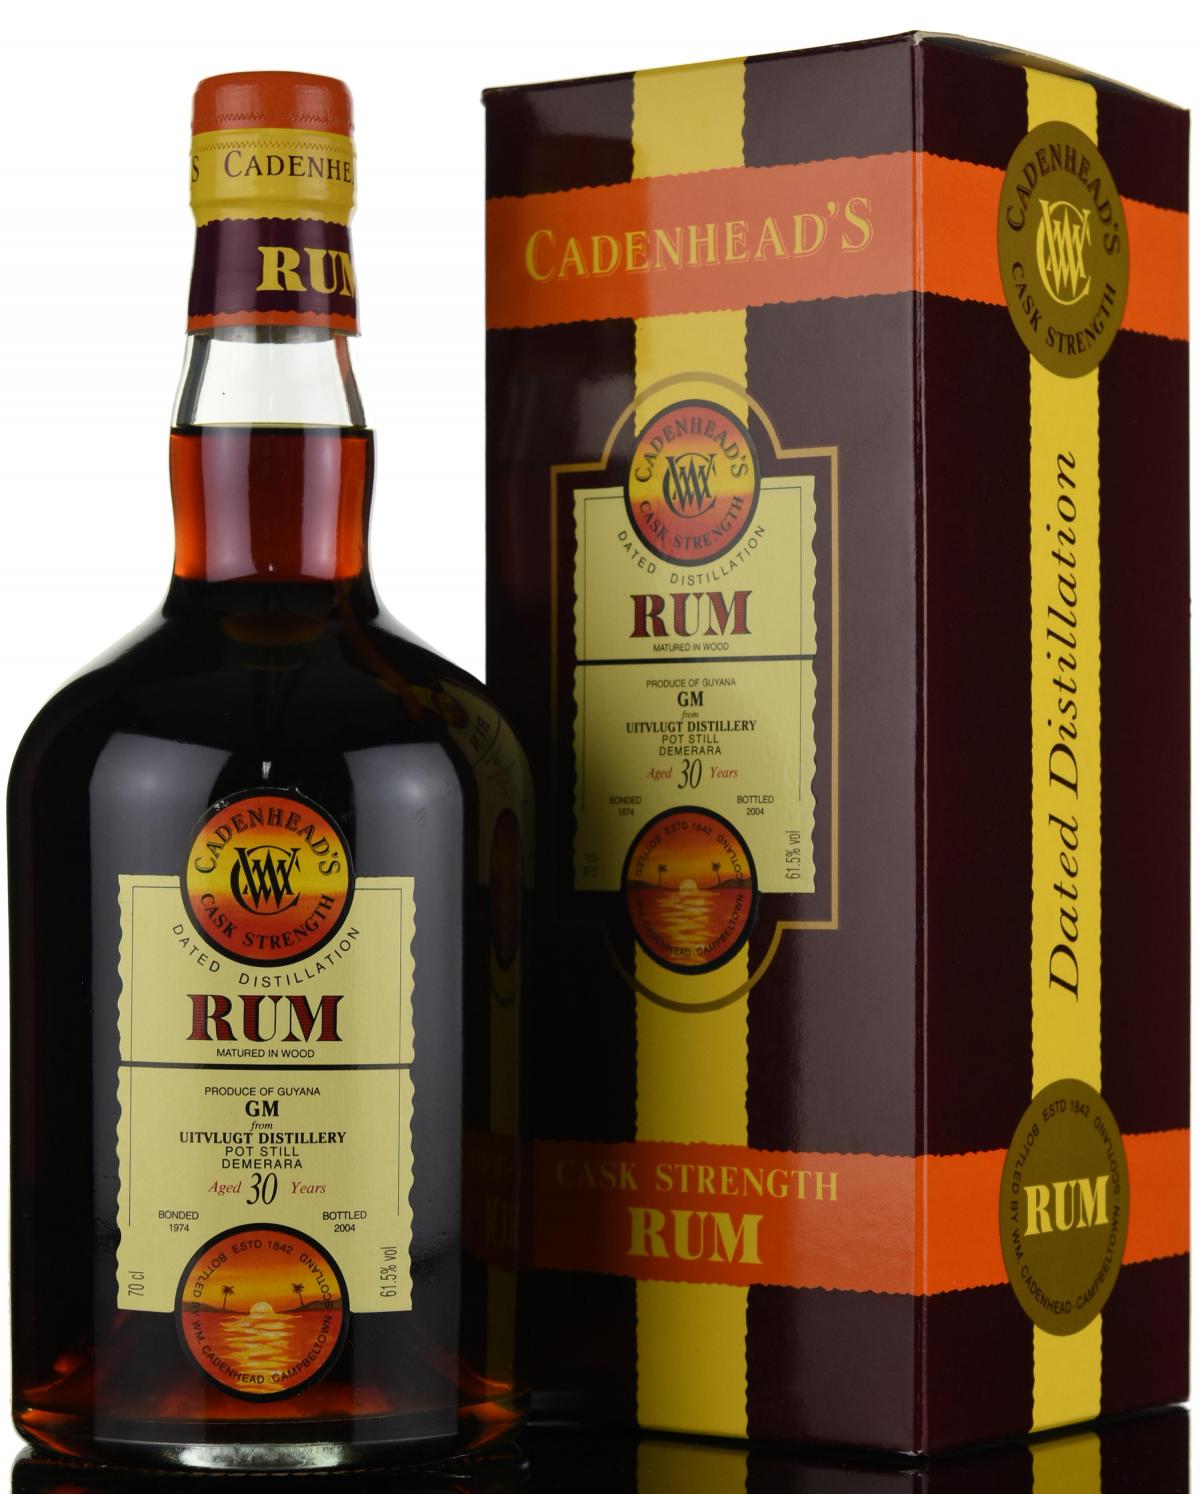 Uitvlugt 1974-2004 - 30 Year Old - Cask Strength - Cadenheads Rum